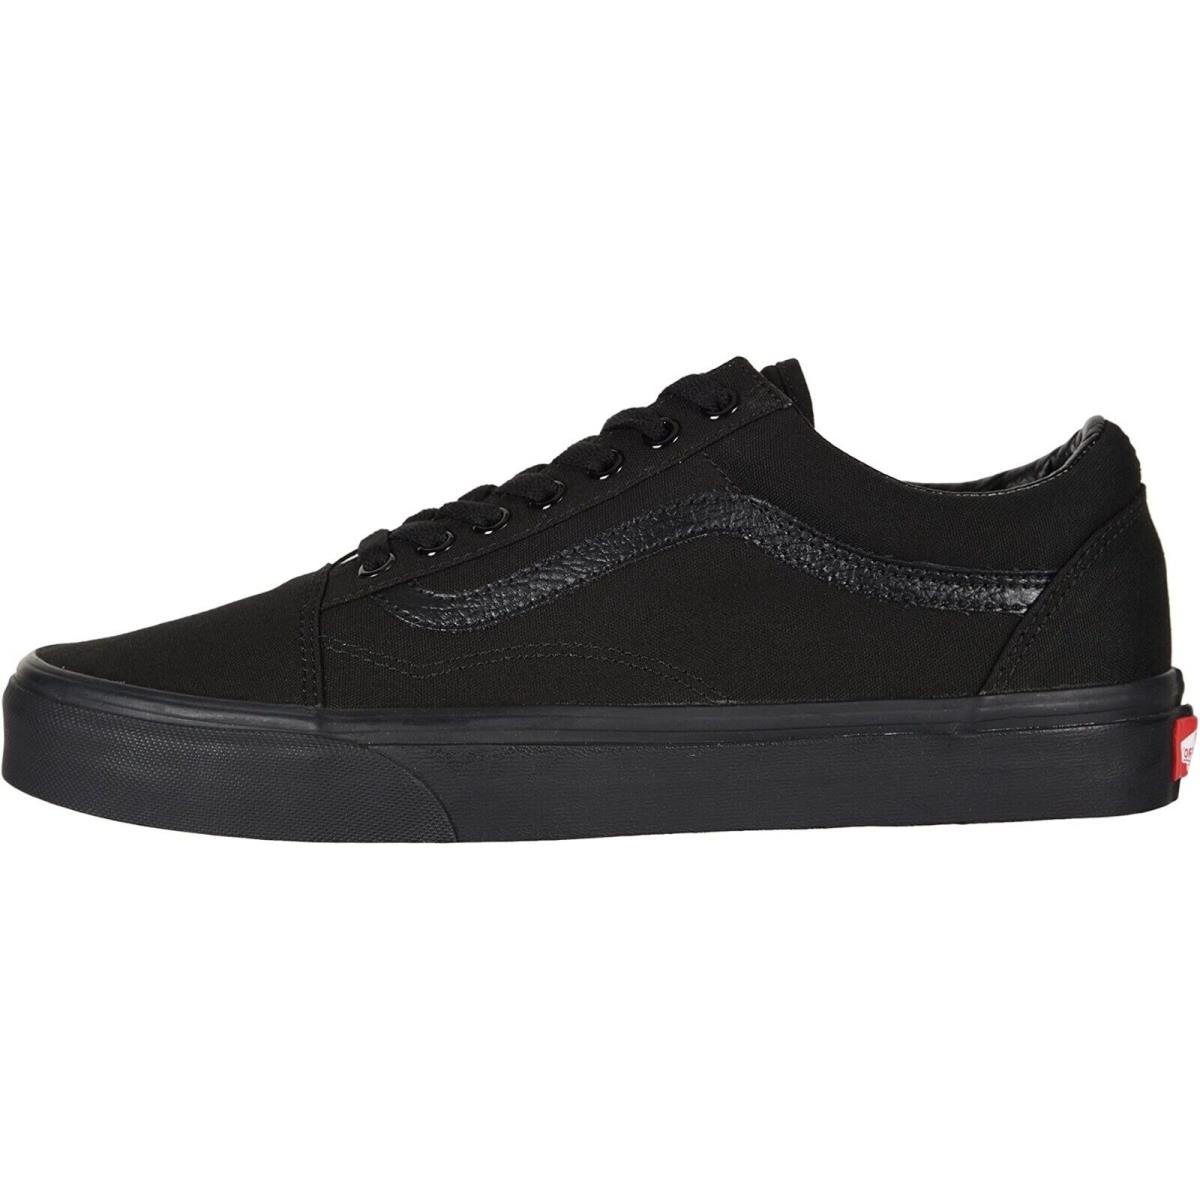 Vans Old Skool Unisex Suede Sneakers Mens Womens Skateboard Canvas Shoes Black/Black